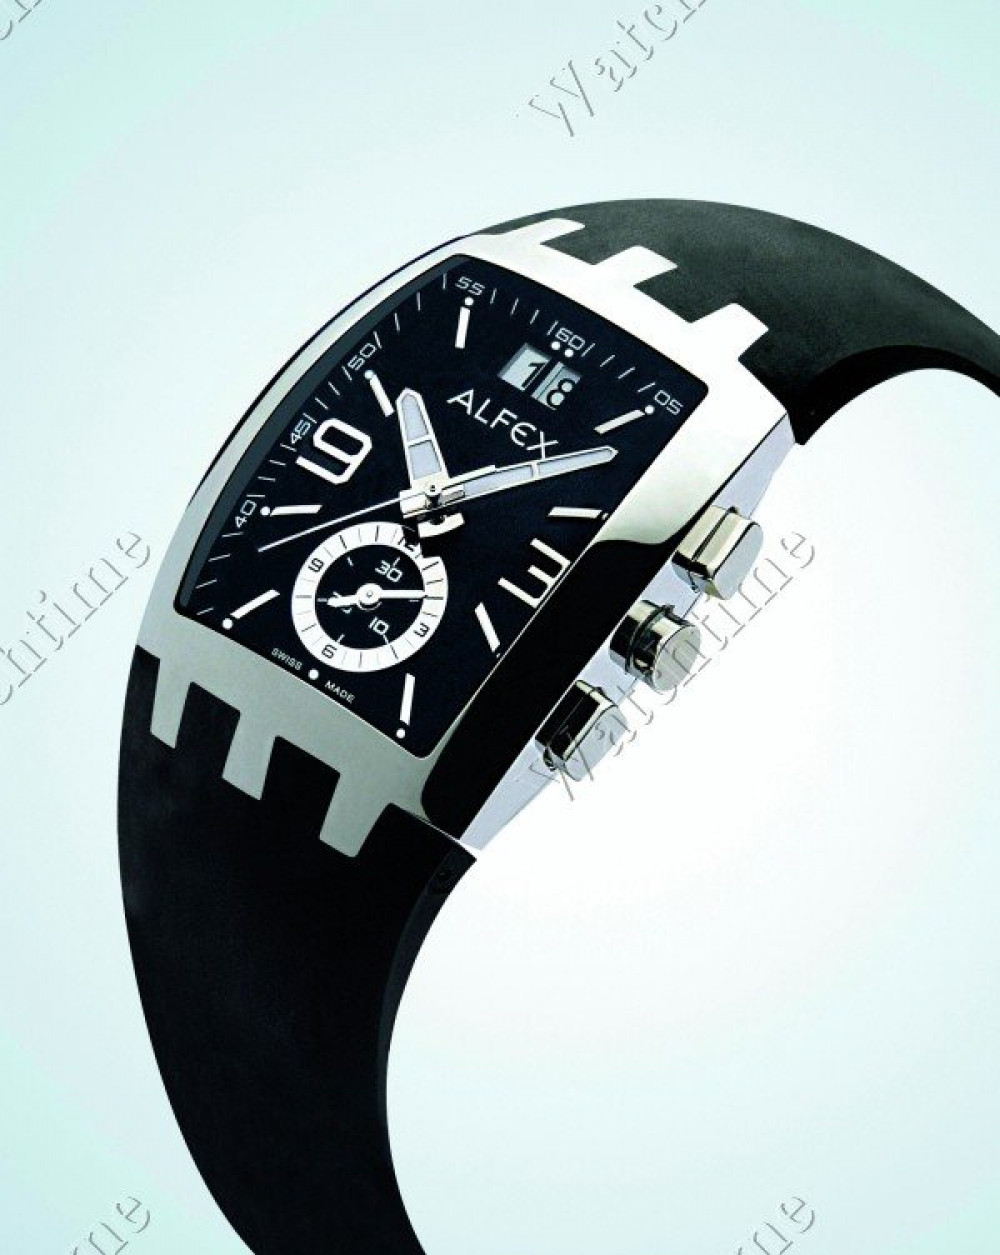 Zegarek firmy Alfex, model Big Line Chrono